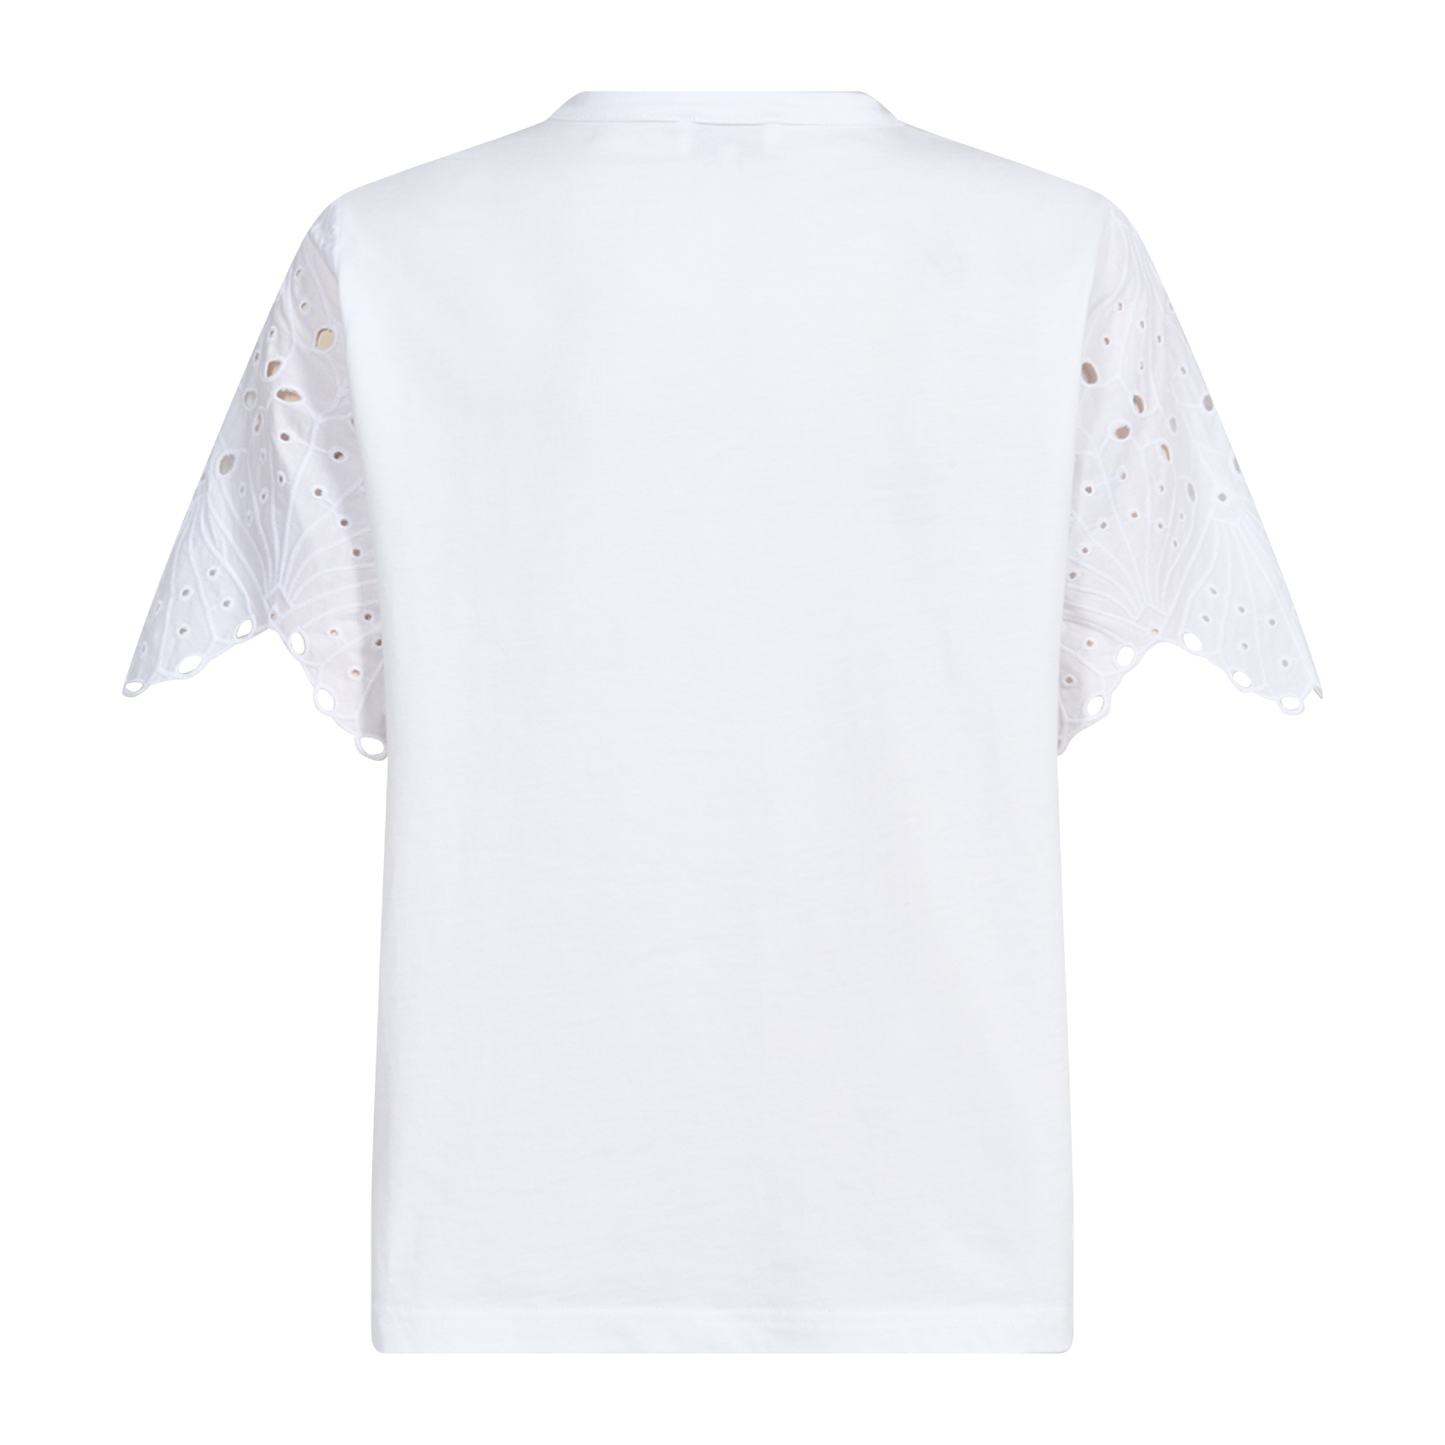 Kowa-18 T-Shirt, Hvid